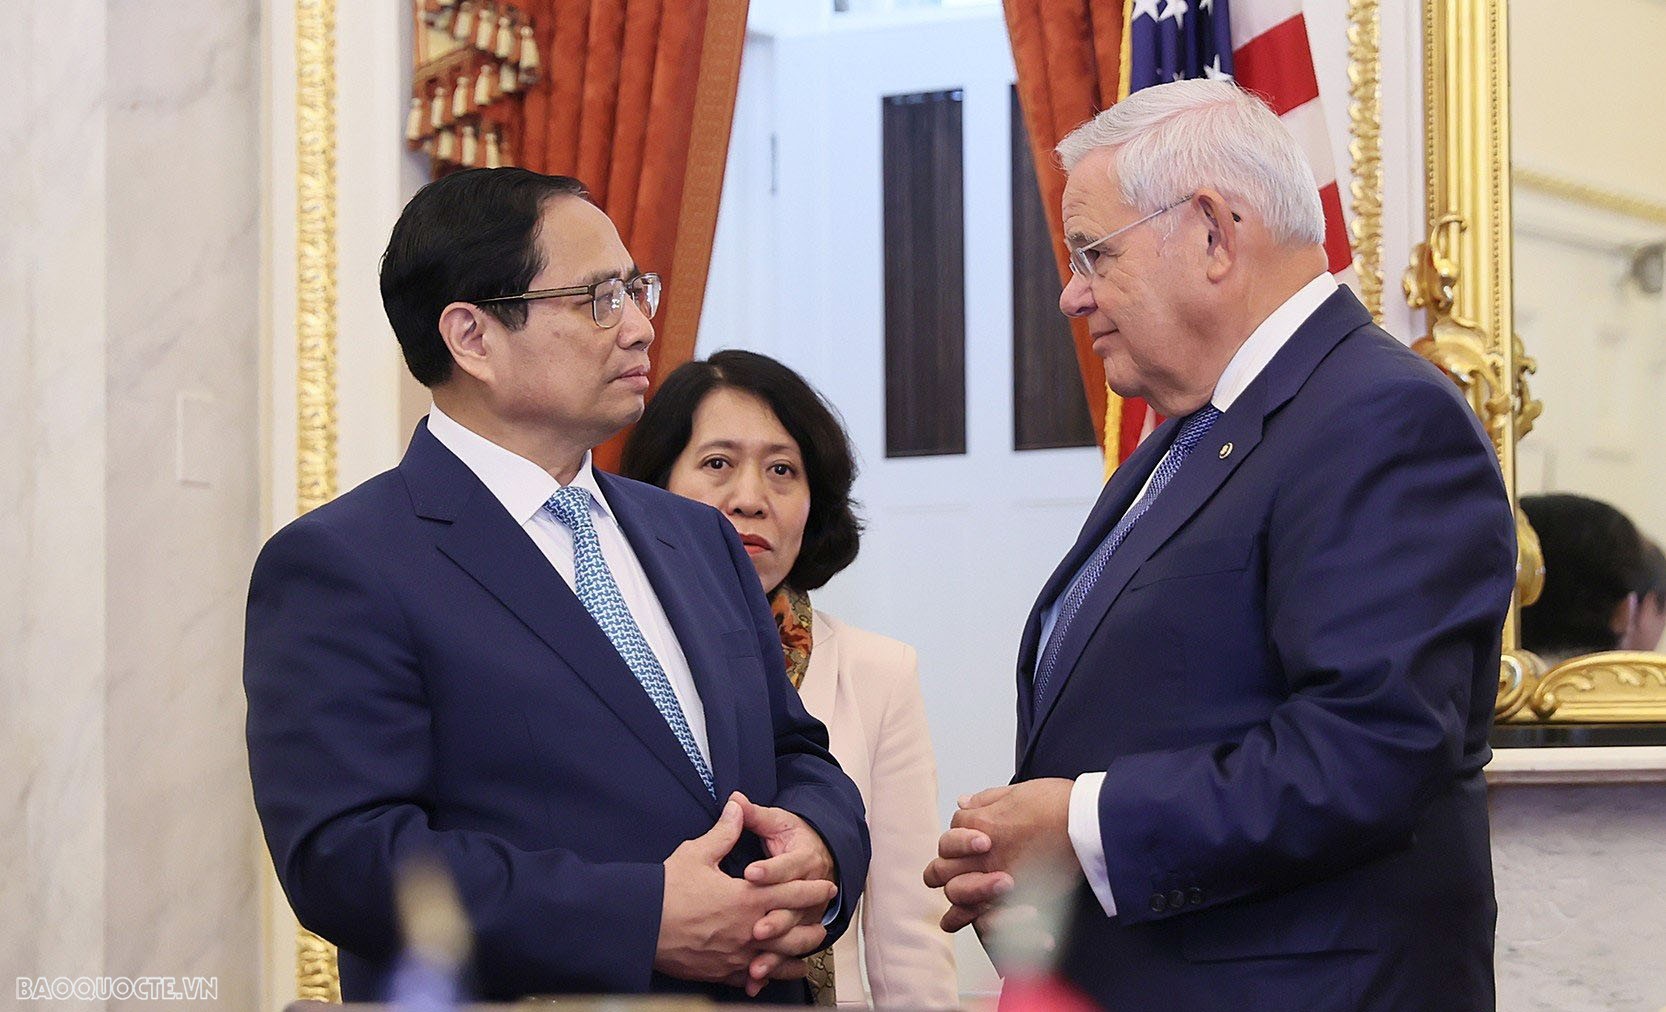 Nghị sĩ Hoa Kỳ: Quan hệ Việt Nam-Hoa Kỳ luôn nhận được sự ủng hộ lưỡng đảng